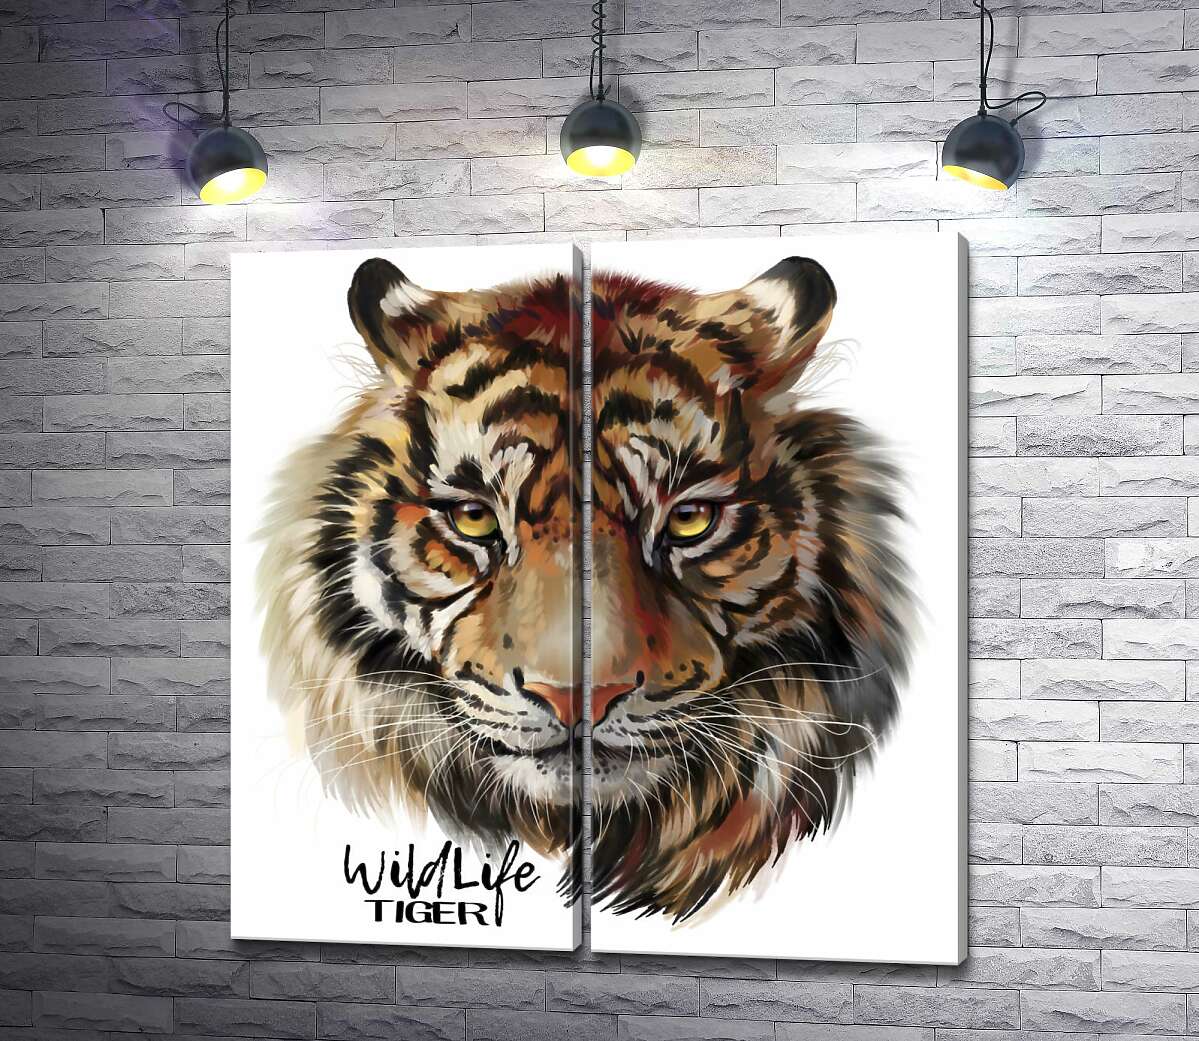 модульная картина Пронзительный взгляд тигра рядом с надписью "wildlife tiger"